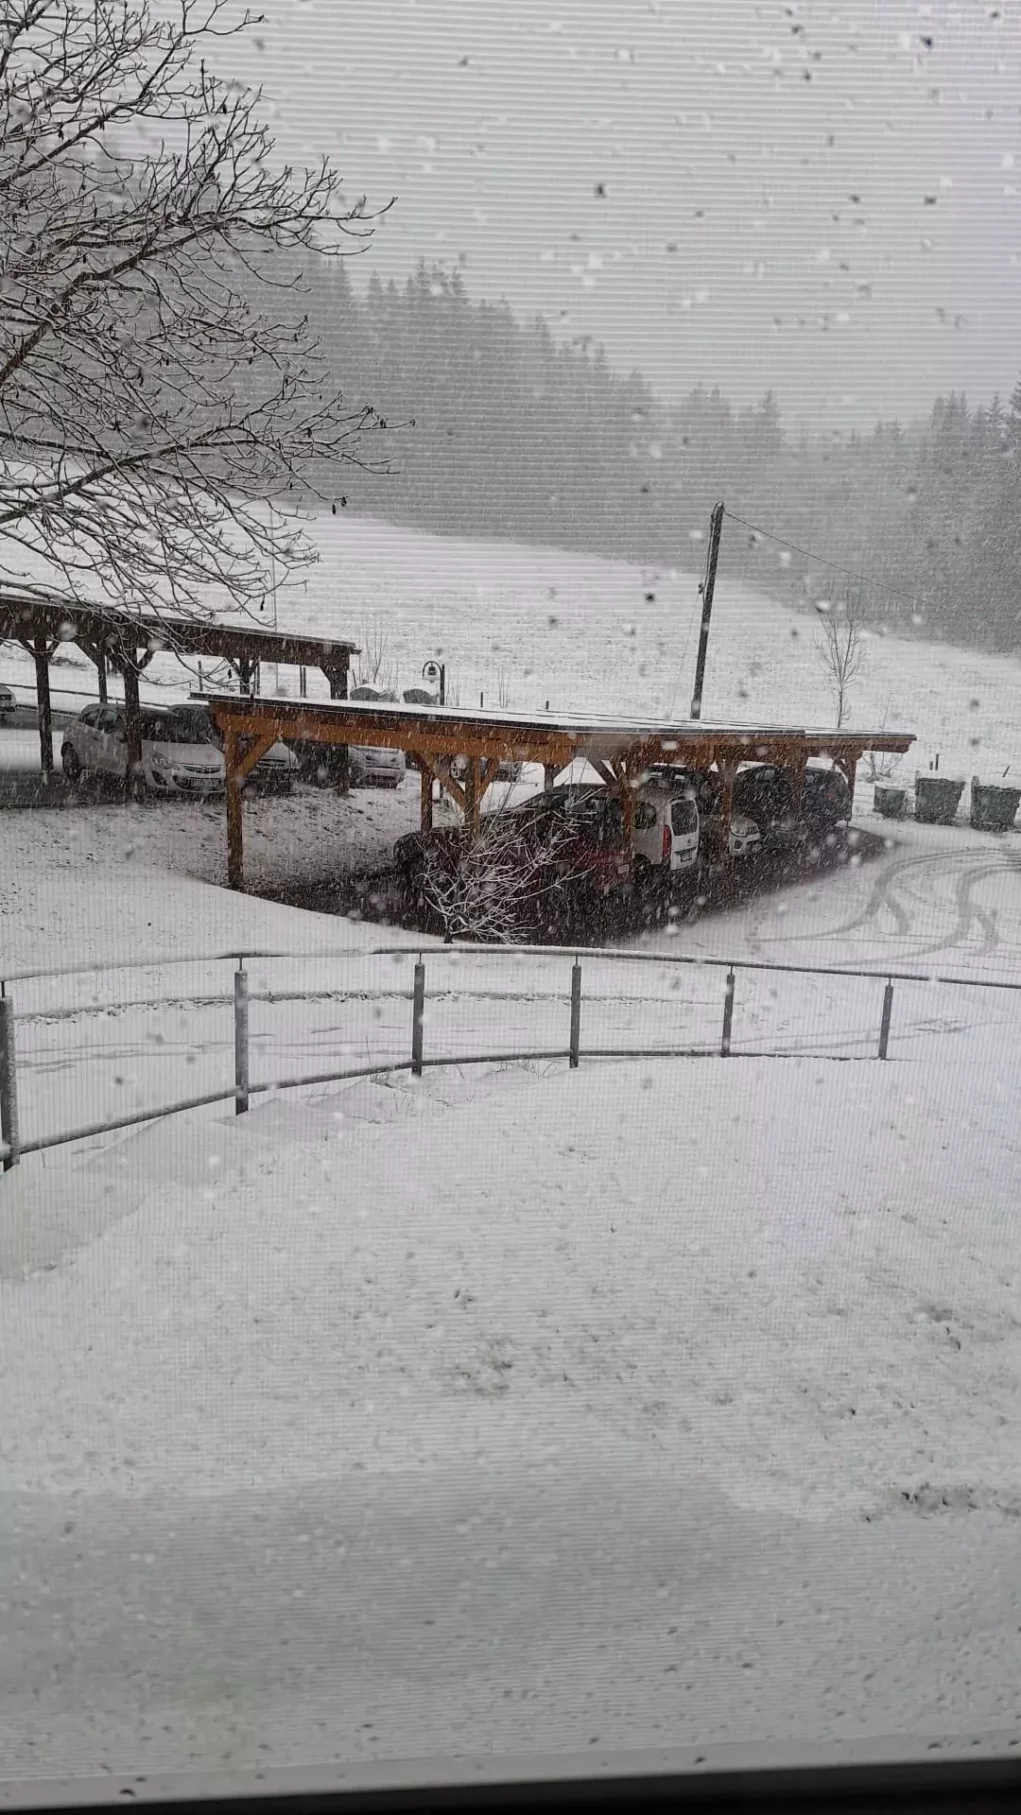 Foto auf 5min.at zeigt Schneefall in Wachsenberg, Gemeinde Steuerberg Bezirk Feldkirchen in Ktn.